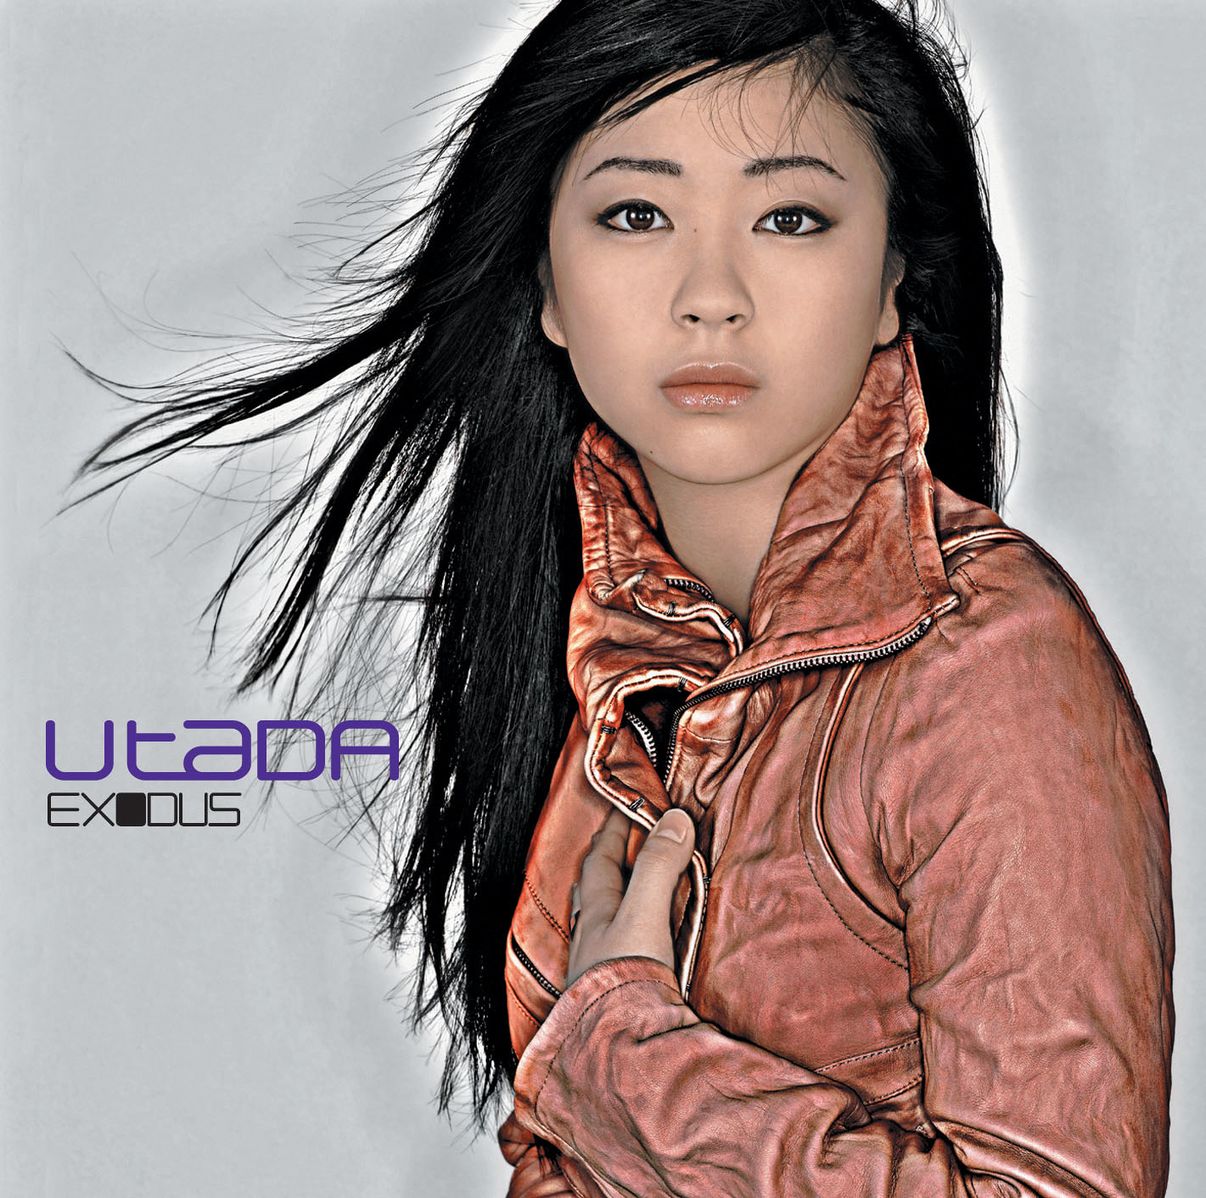 Utada Exodus cover artwork